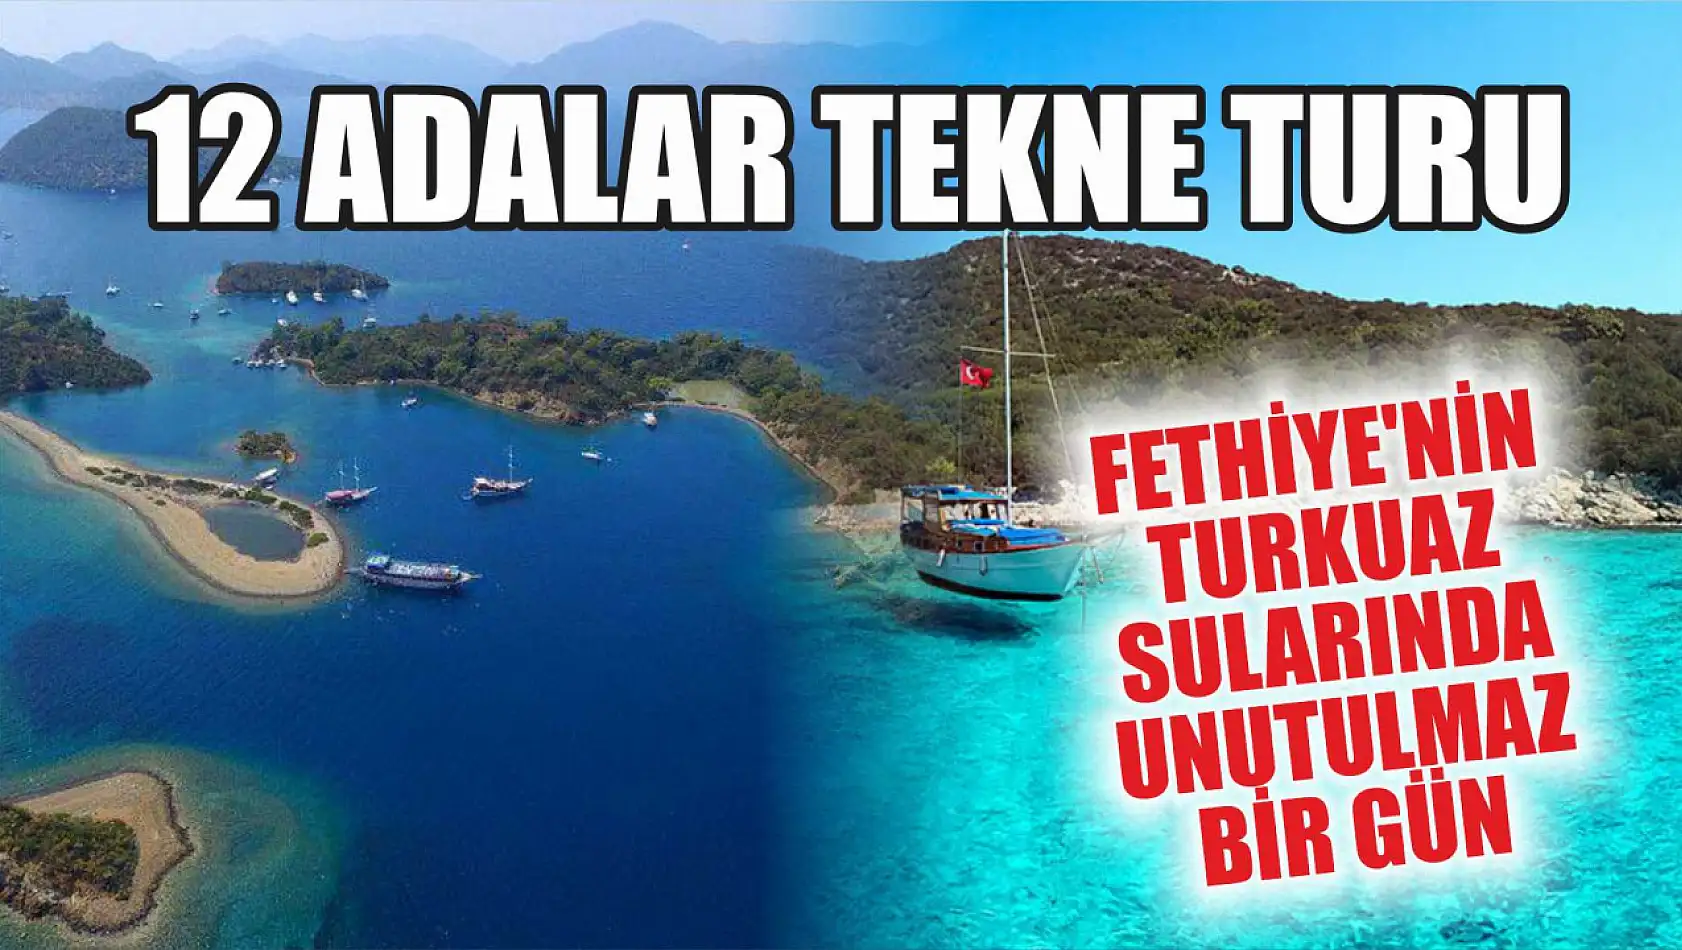 12 Adalar Tekne Turu: Fethiye'nin turkuaz sularında unutulmaz bir gün 